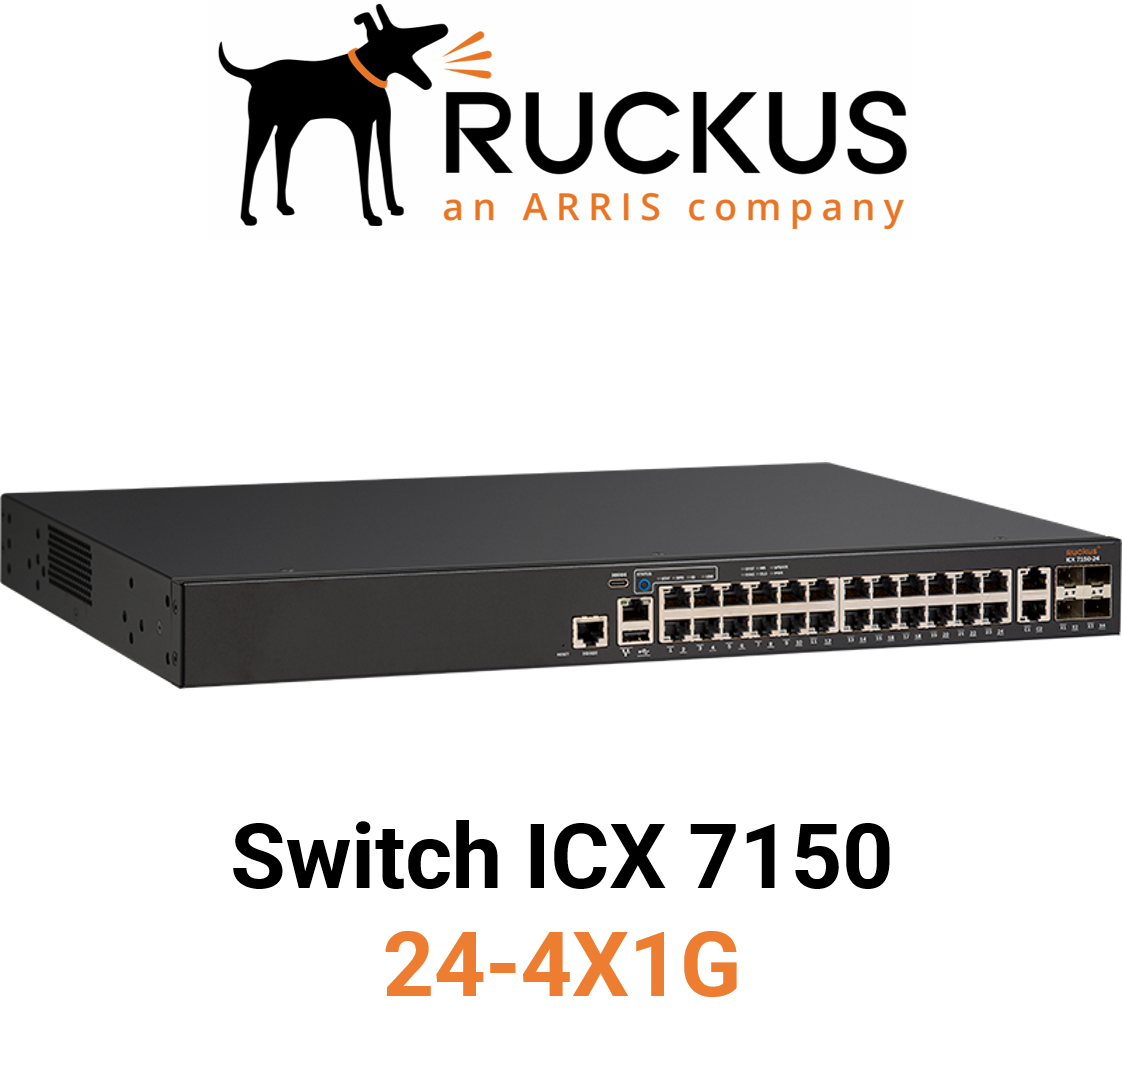 Ruckus ICX7150-24-4X1G Switch